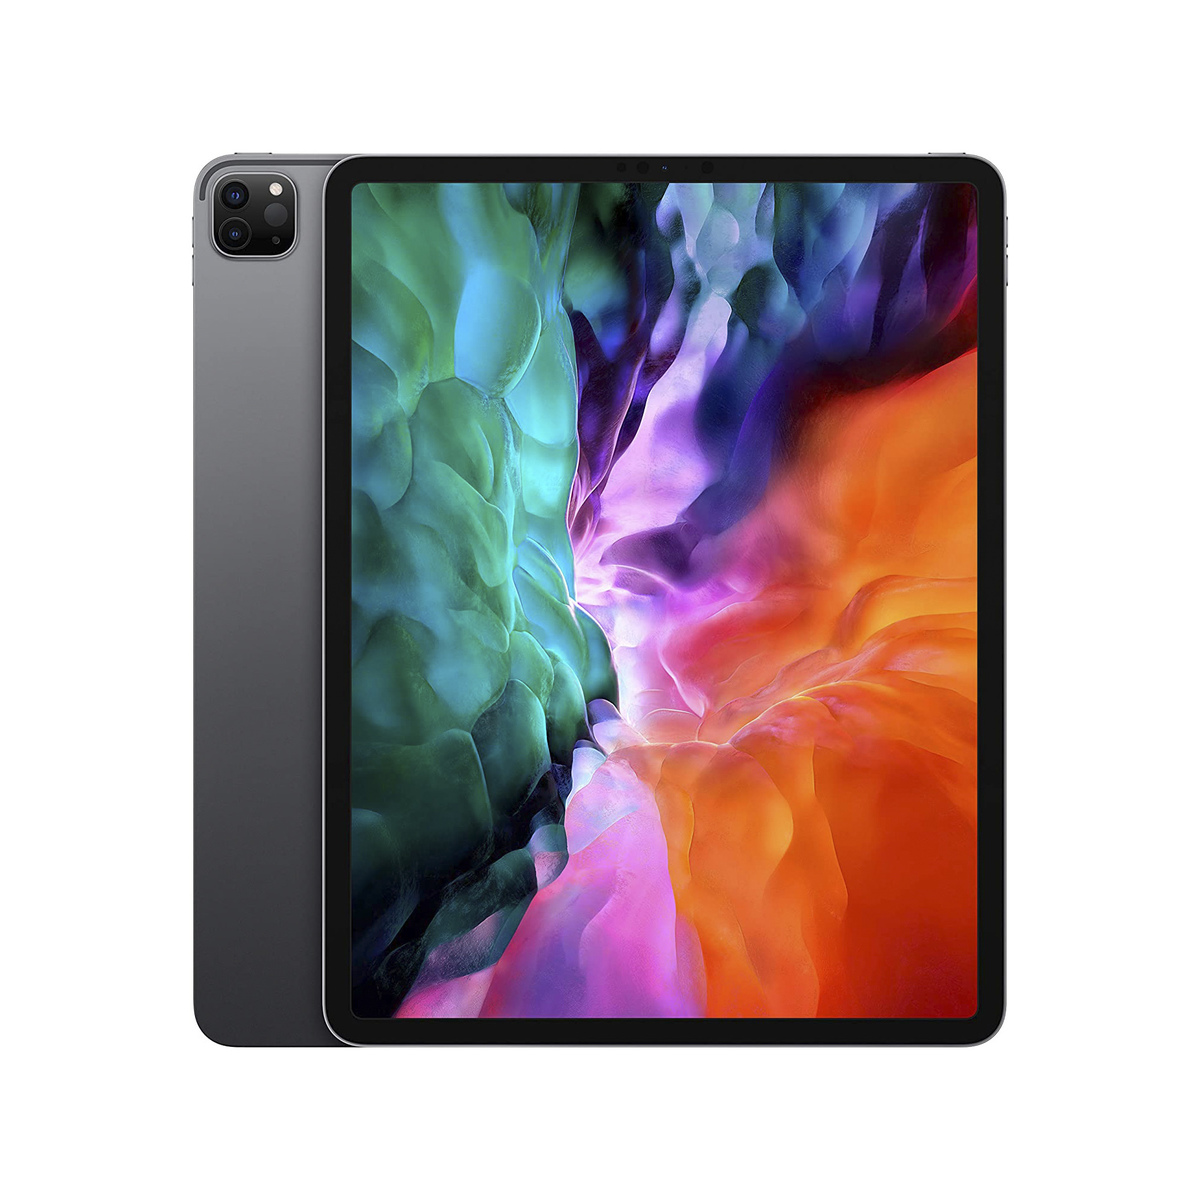 Buy Apple iPad Pro (12.9-inch, Wi-Fi, 128GB) - Space Gray (4th